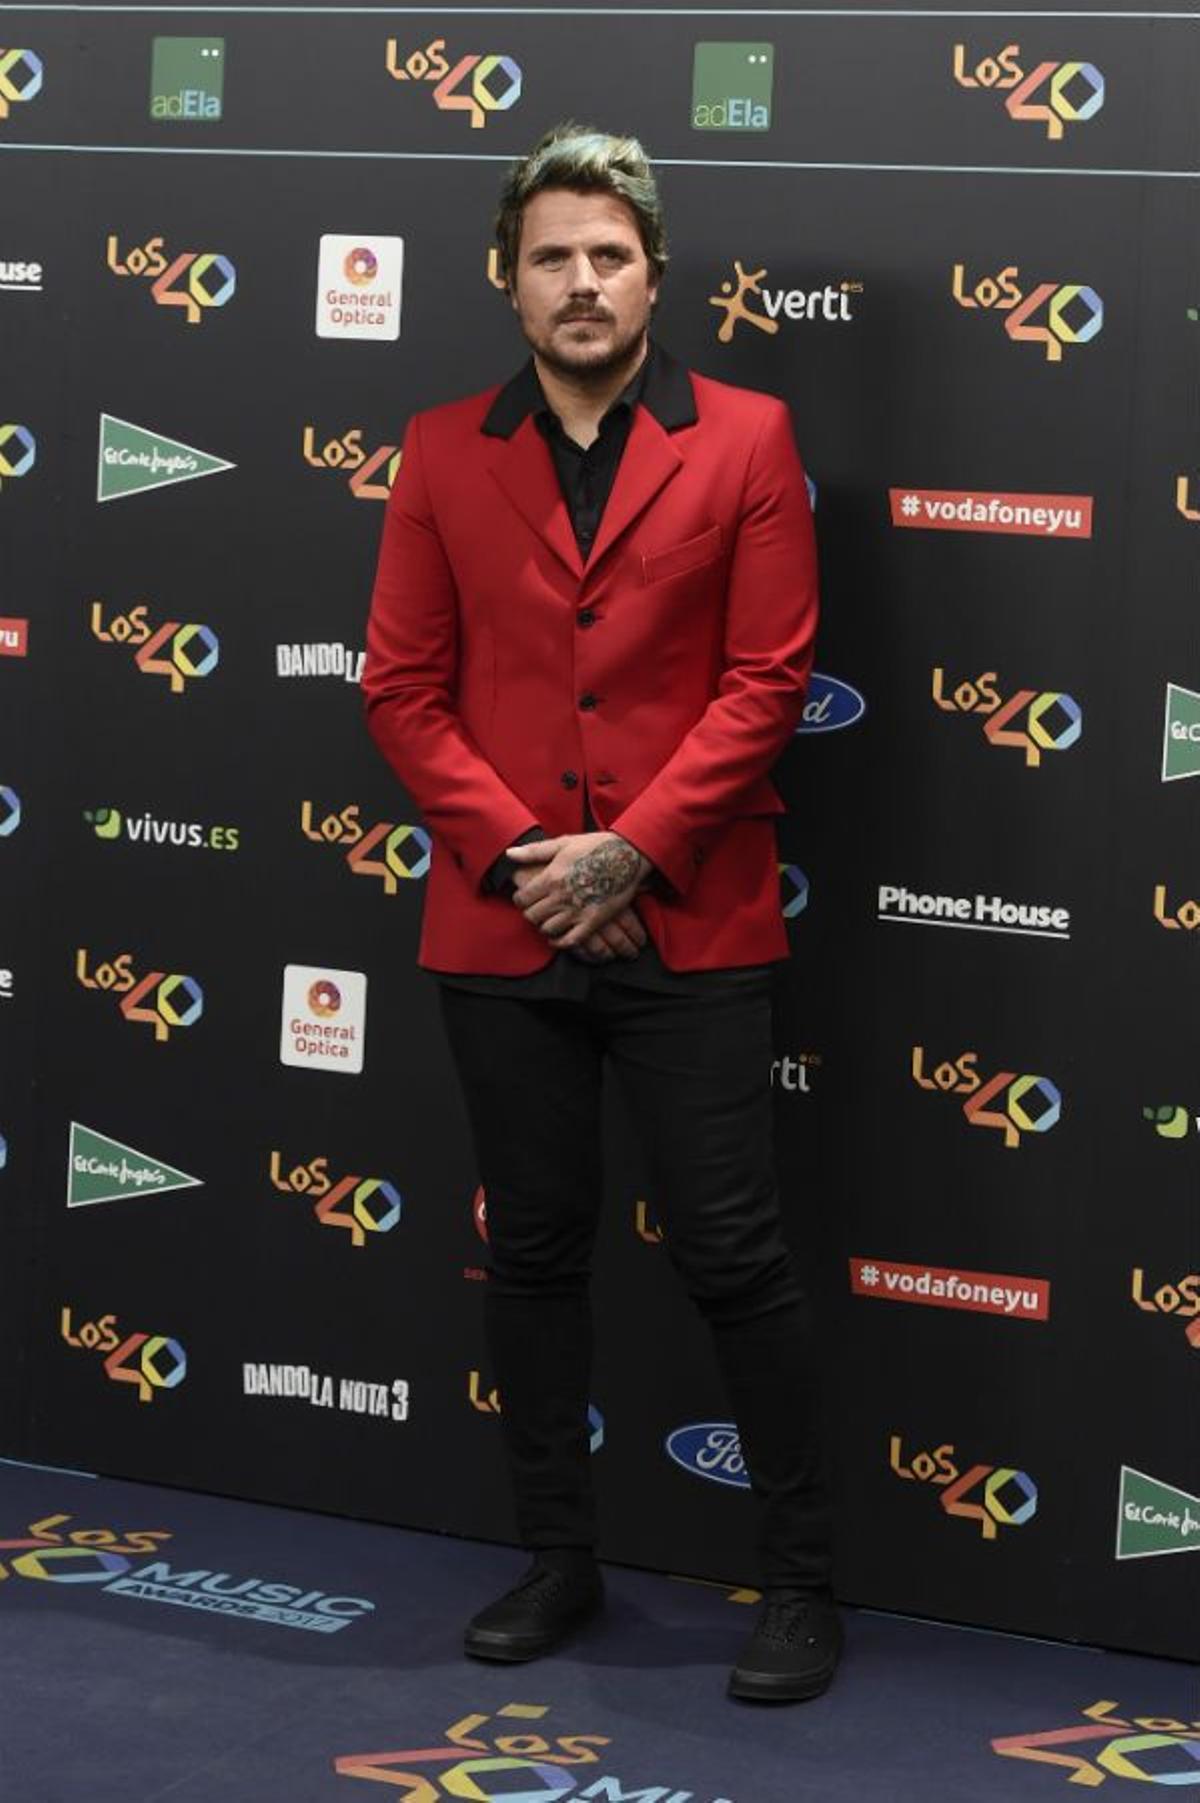 Dani Martín en Los 40 Music Awards 2017